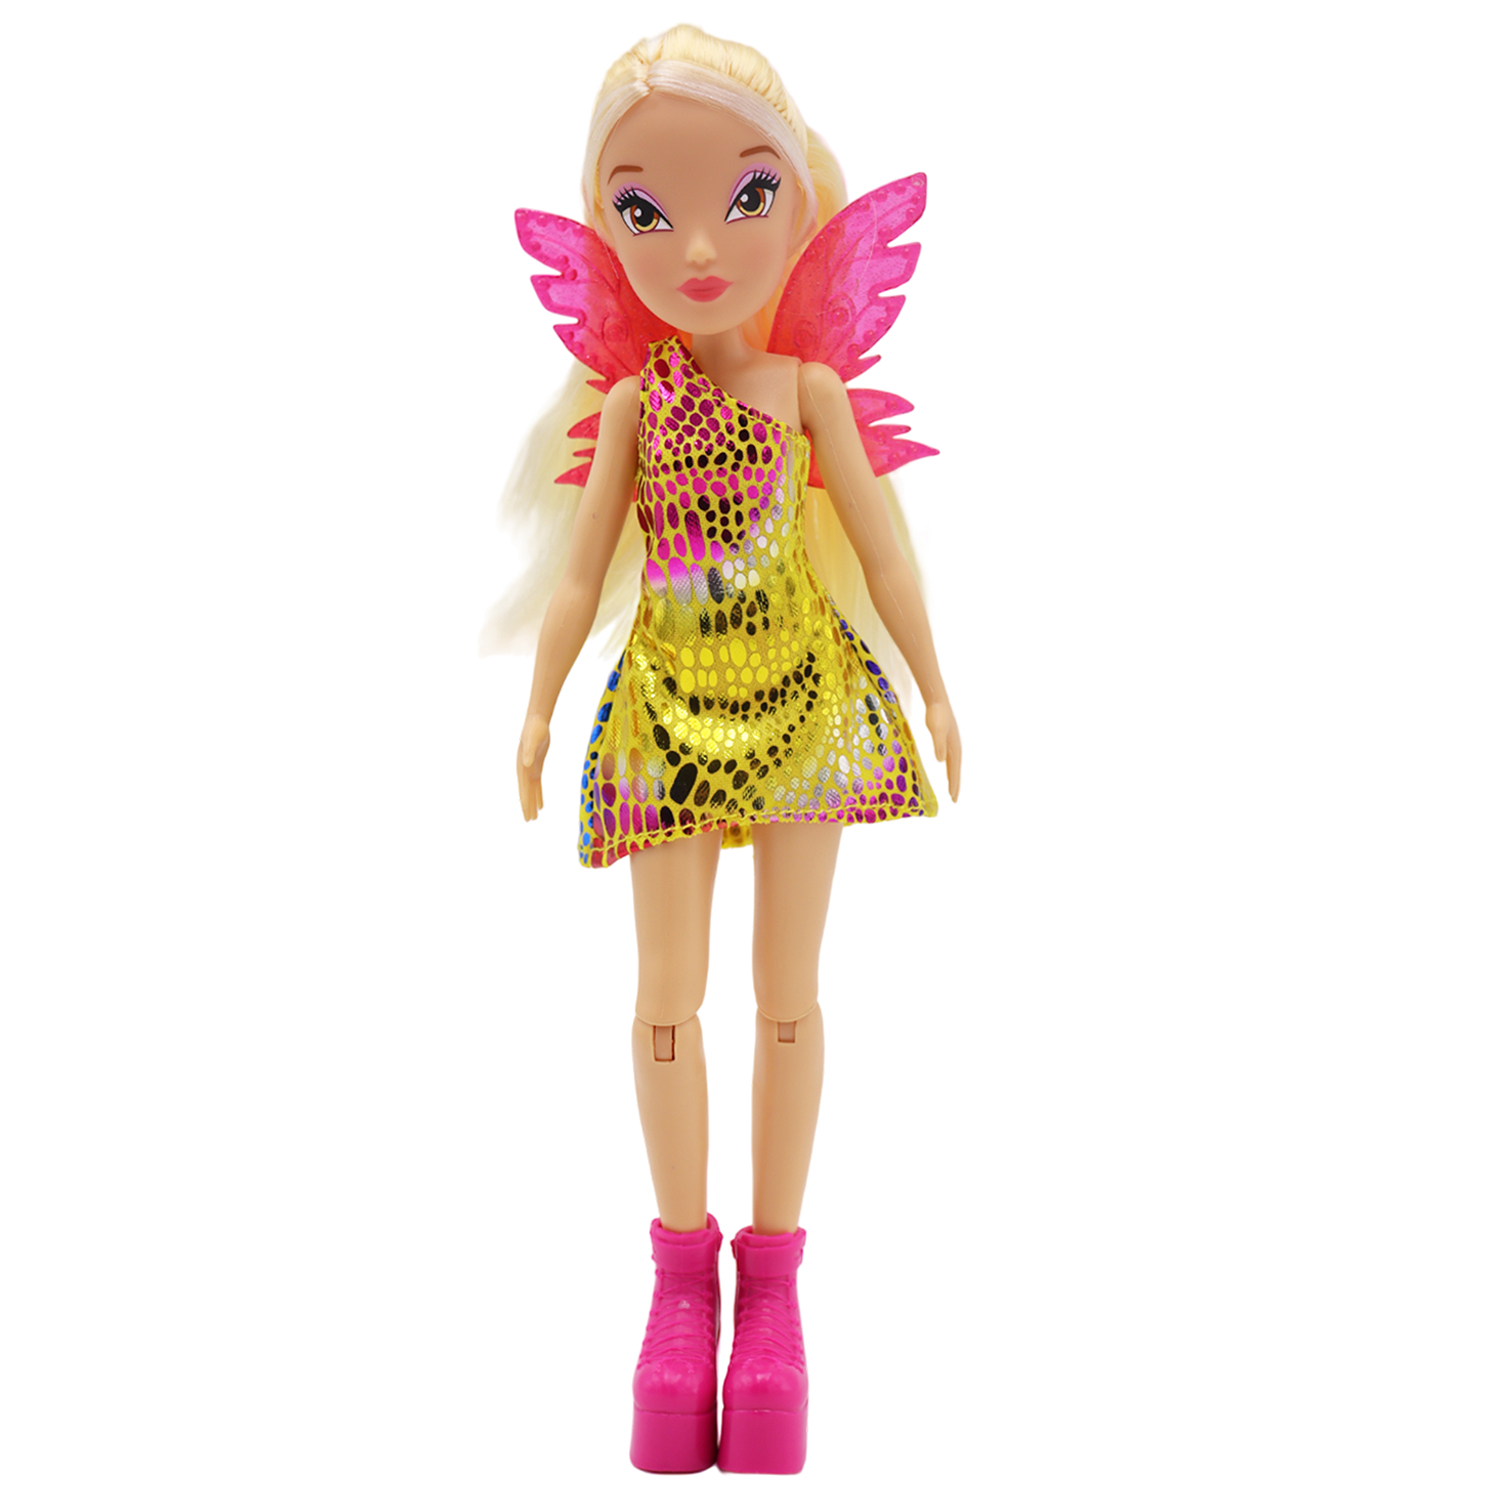 Кукла шарнирная Winx Club Стелла с крыльями, 24 см, IW01552303 кукла winx club шарнирная btw scratch art wings стелла с крыльями для скретчинга 24 см